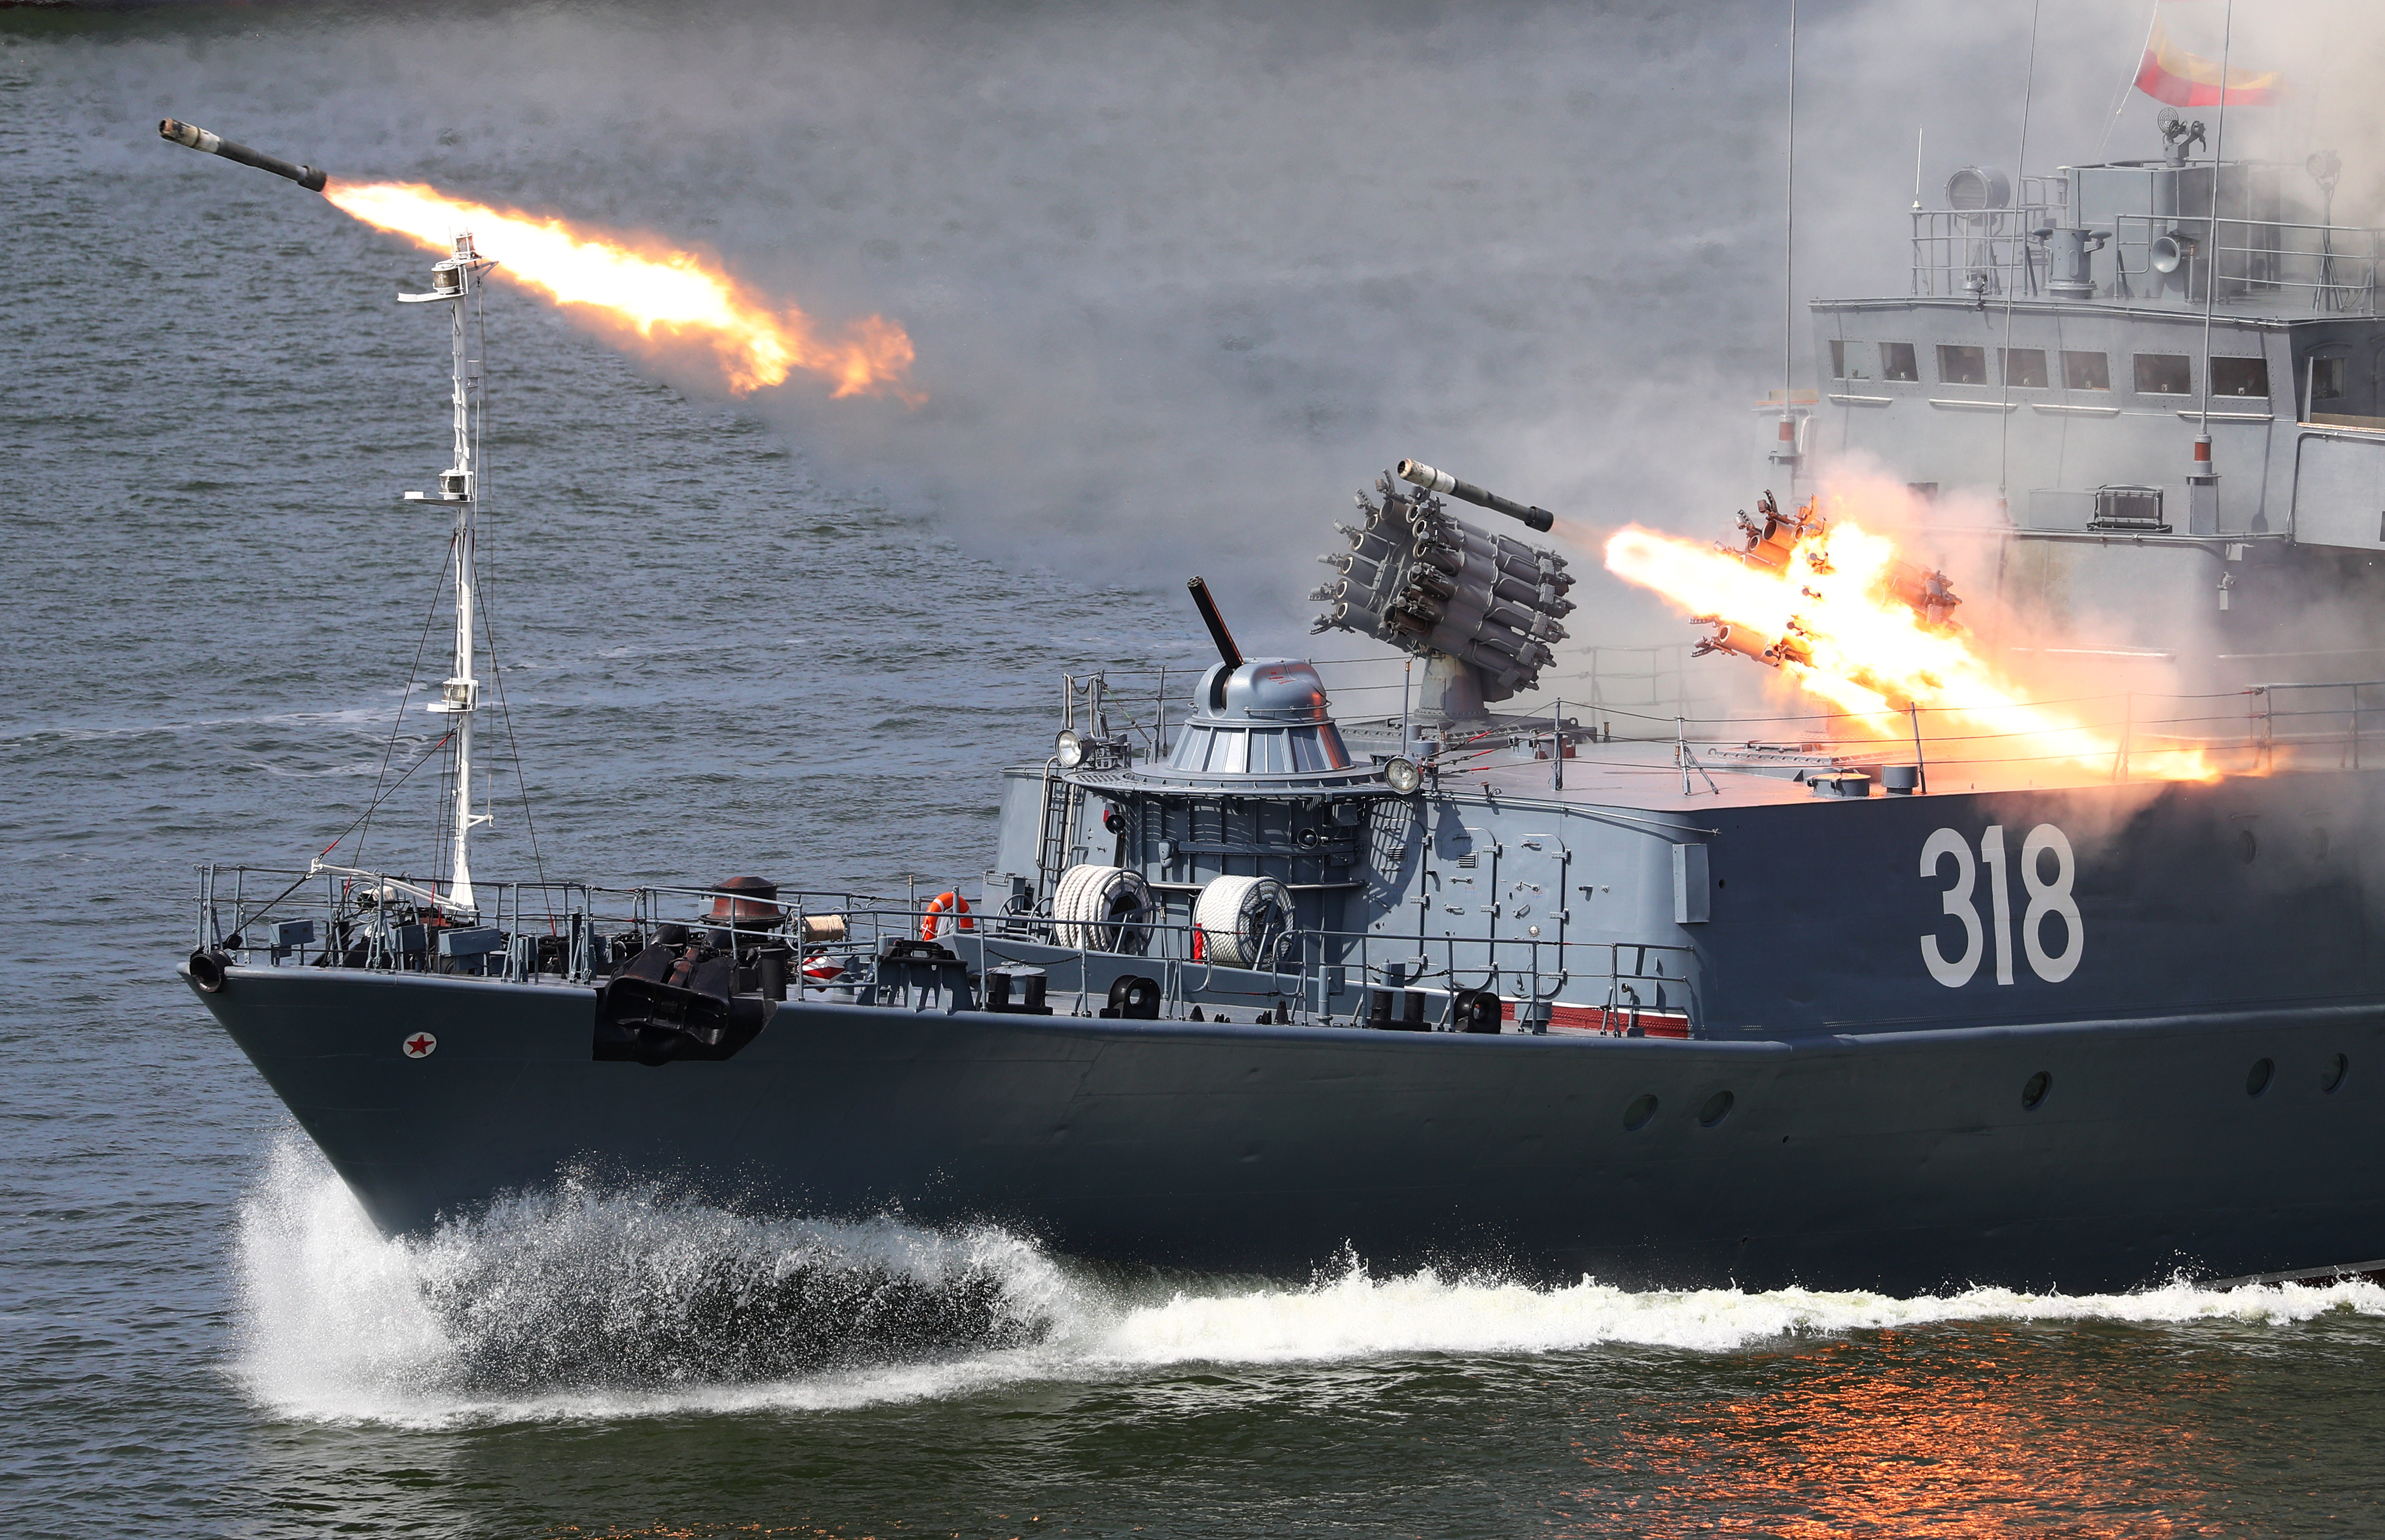 Lanzamiento de misiles con capacidad nuclear lanzados desde la nave Aleksin durante los ejercicios militares realizados en Baltiysk, dentro del enclave ruso de Kaliningrad. REUTERS/Vitaly Nevar